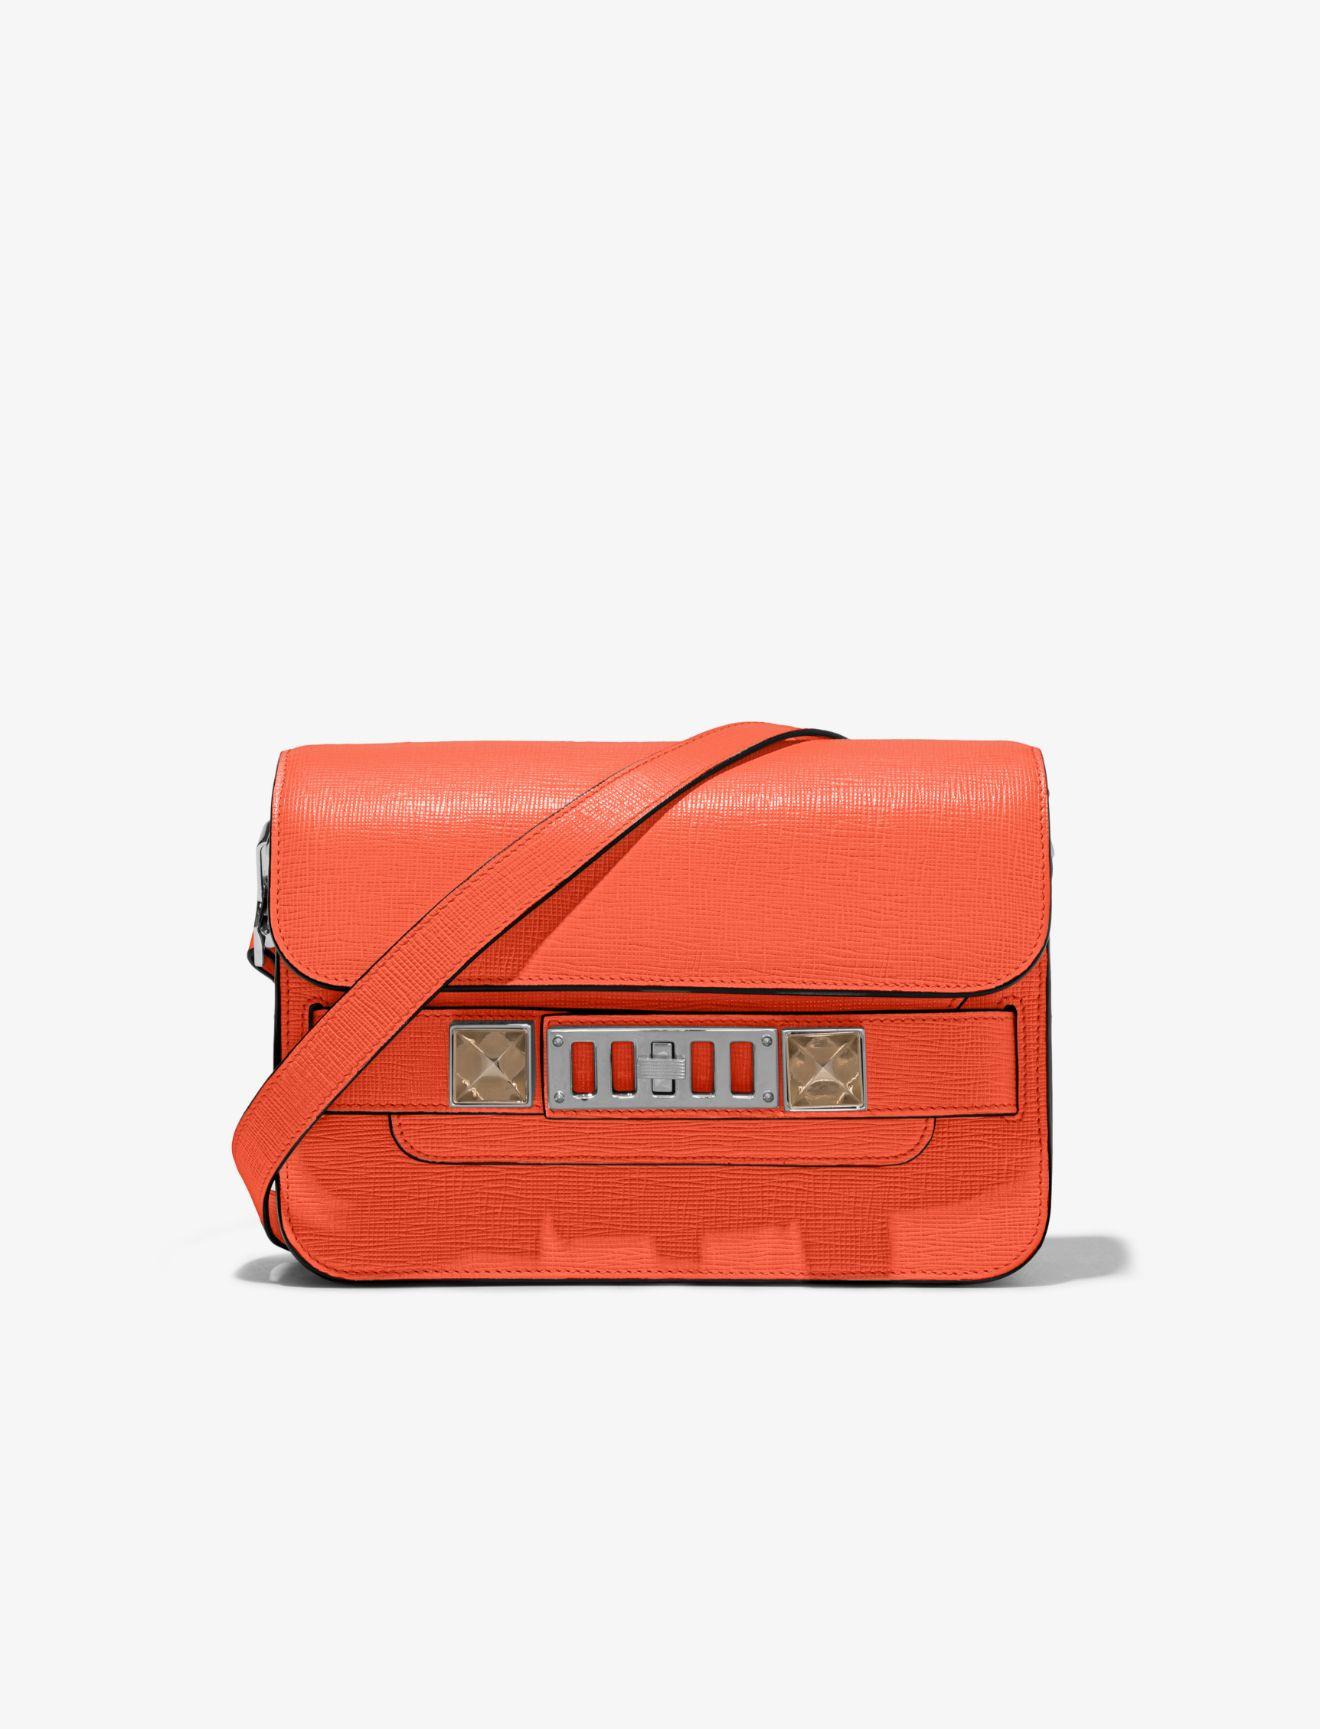 Proenza Schouler Ps11 Mini Classic Bag in Orange | Lyst